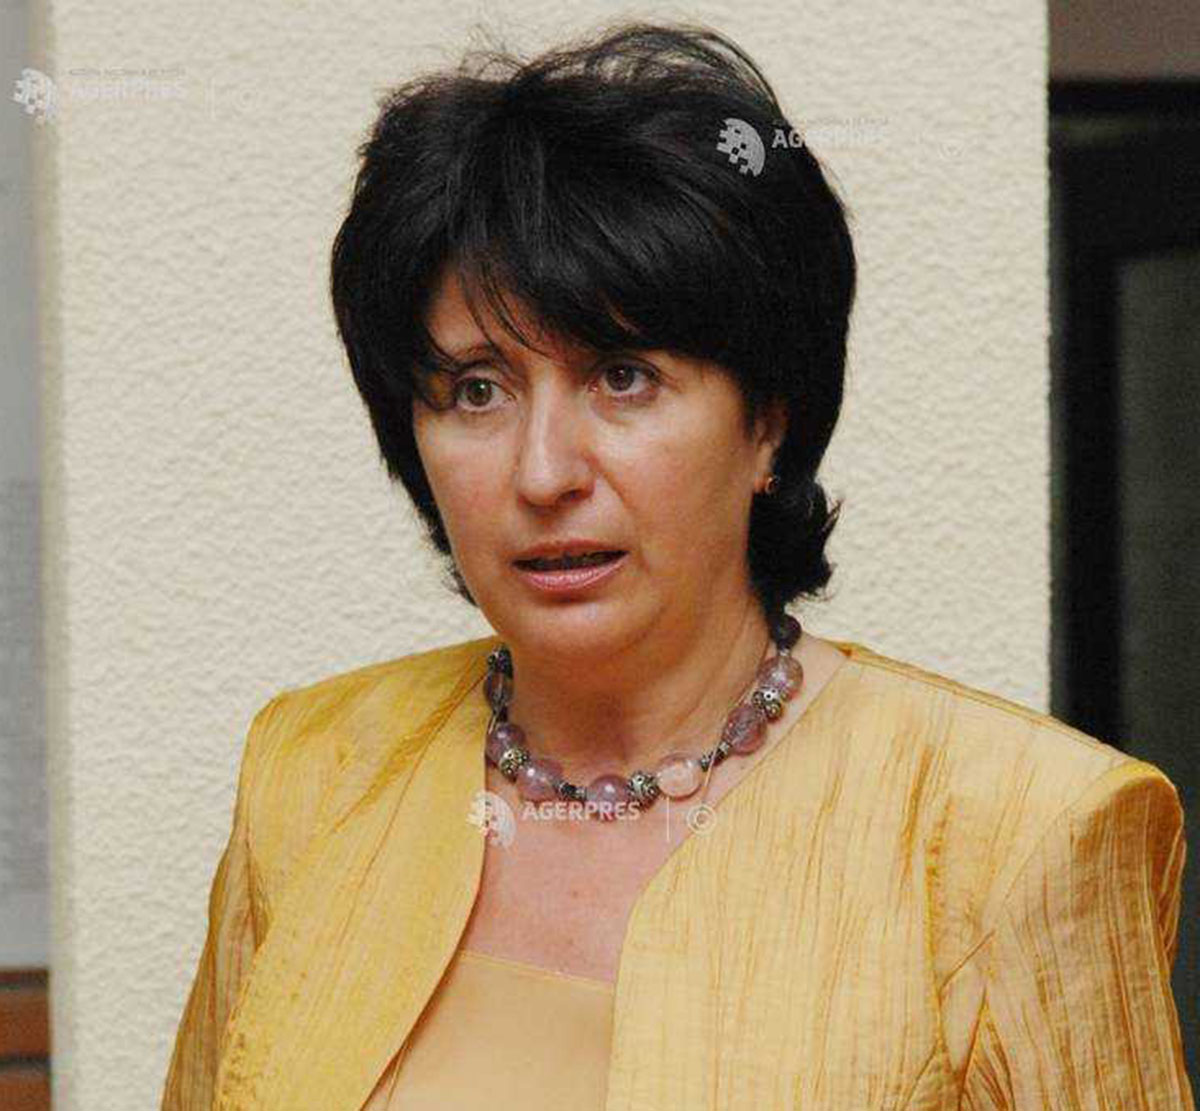 Manuela Sidoroff